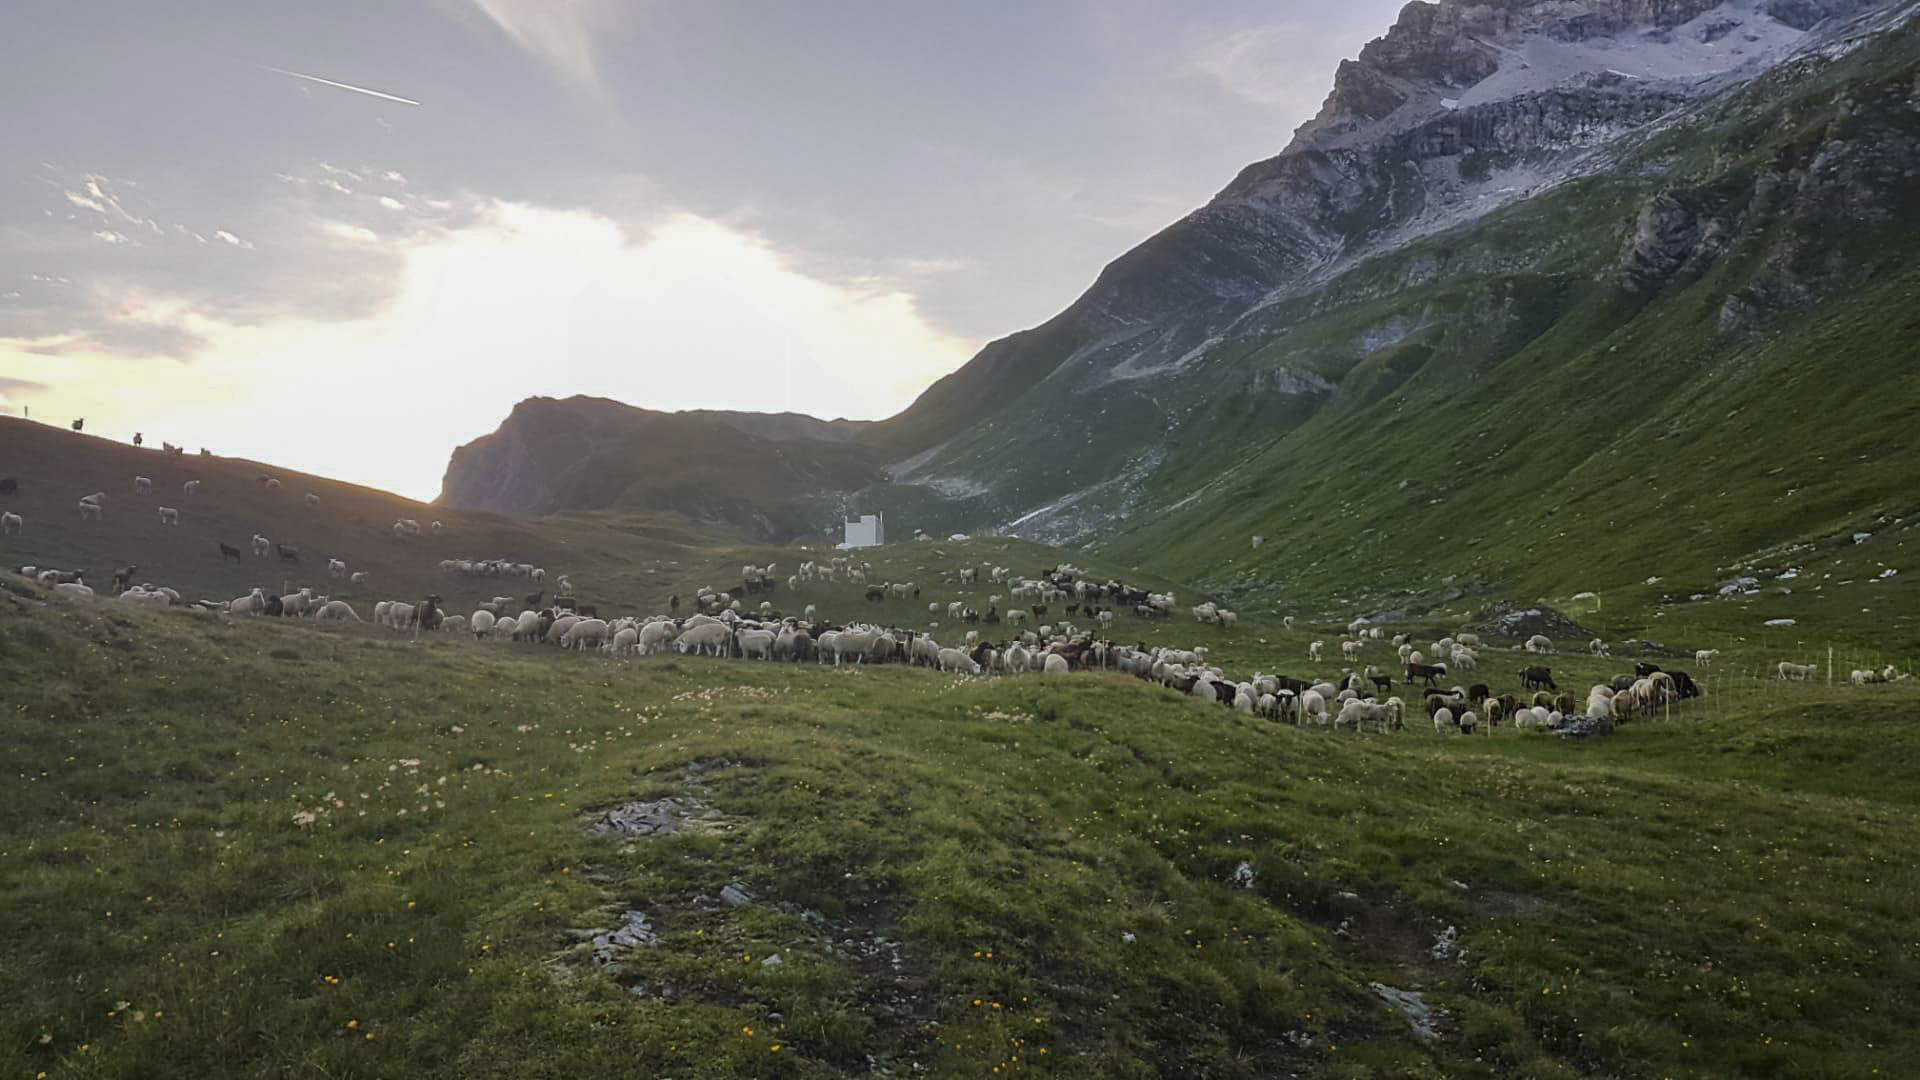 Herdenschutzkonzept auf der Alp Stutz - 7 Nachtpferche schützen die Schafe vor dem Wolf